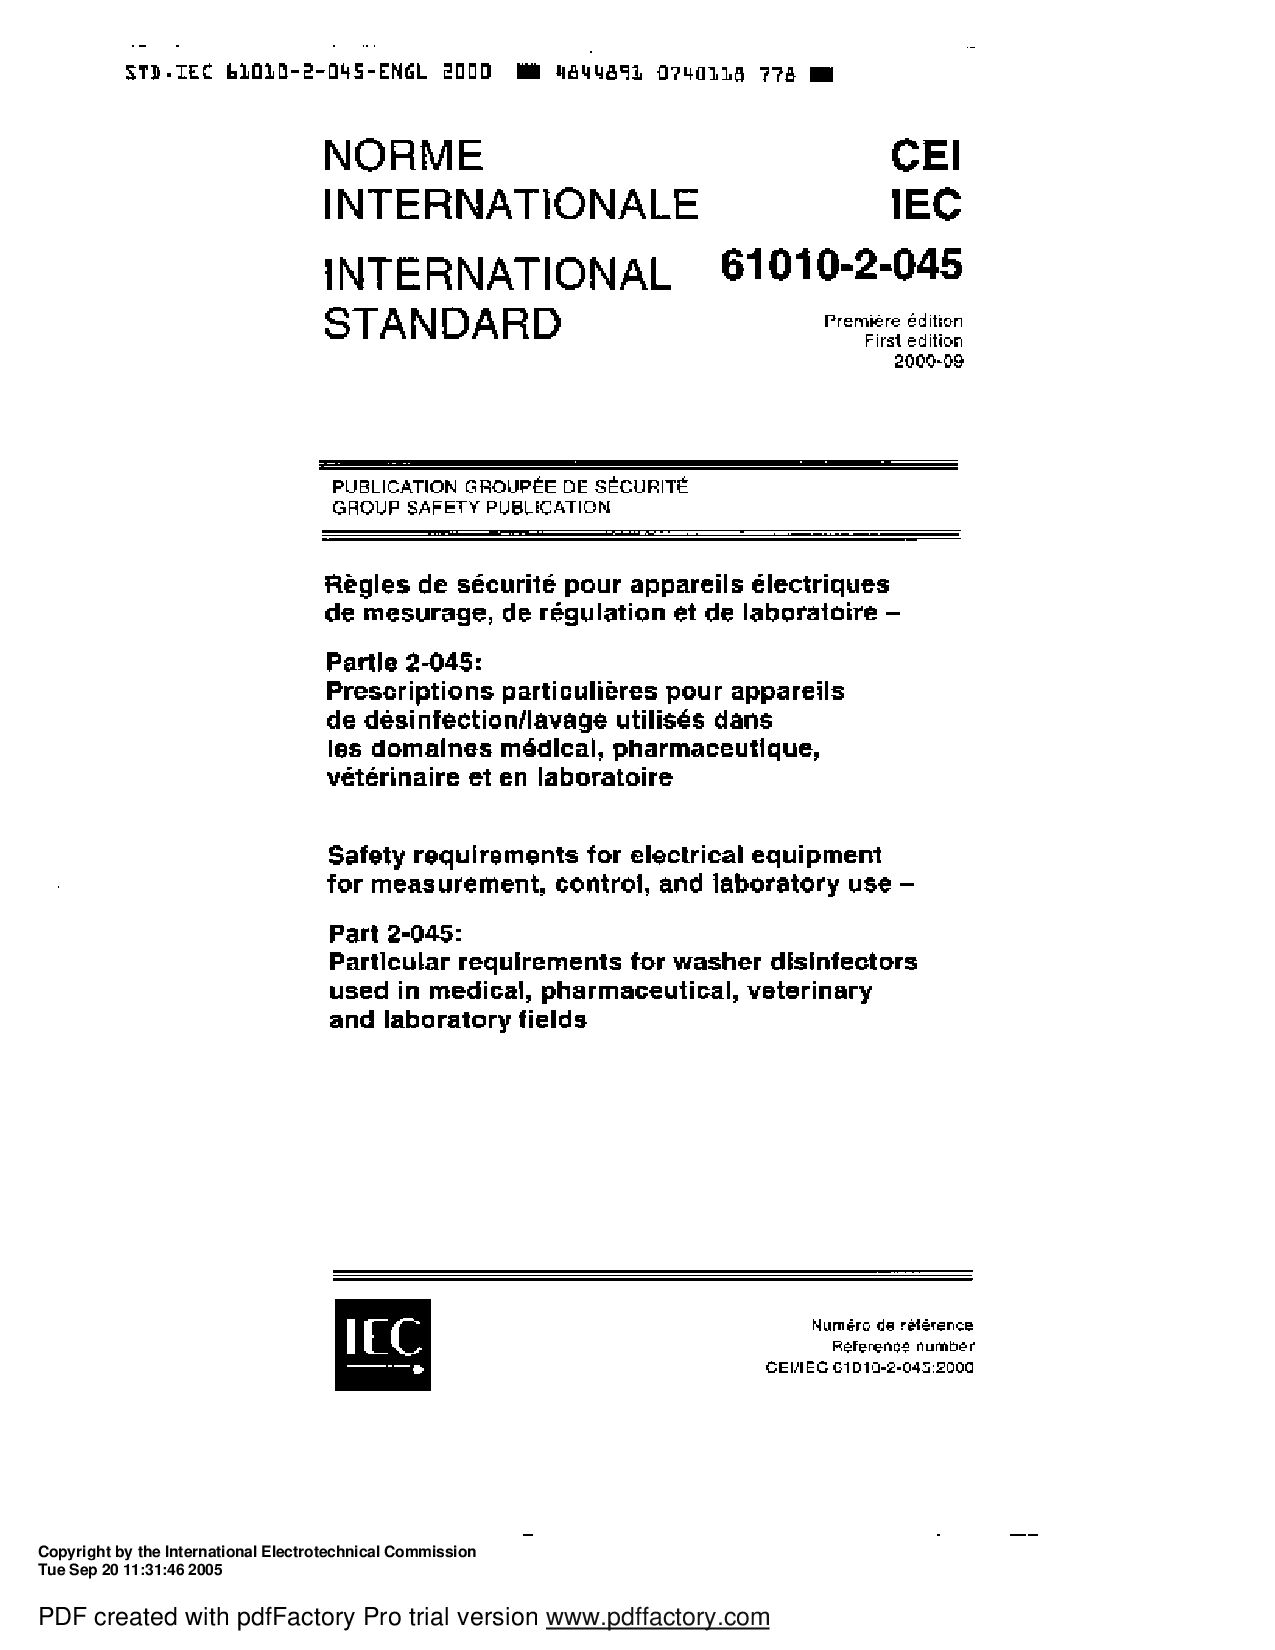 IEC 61010-2-045:2000